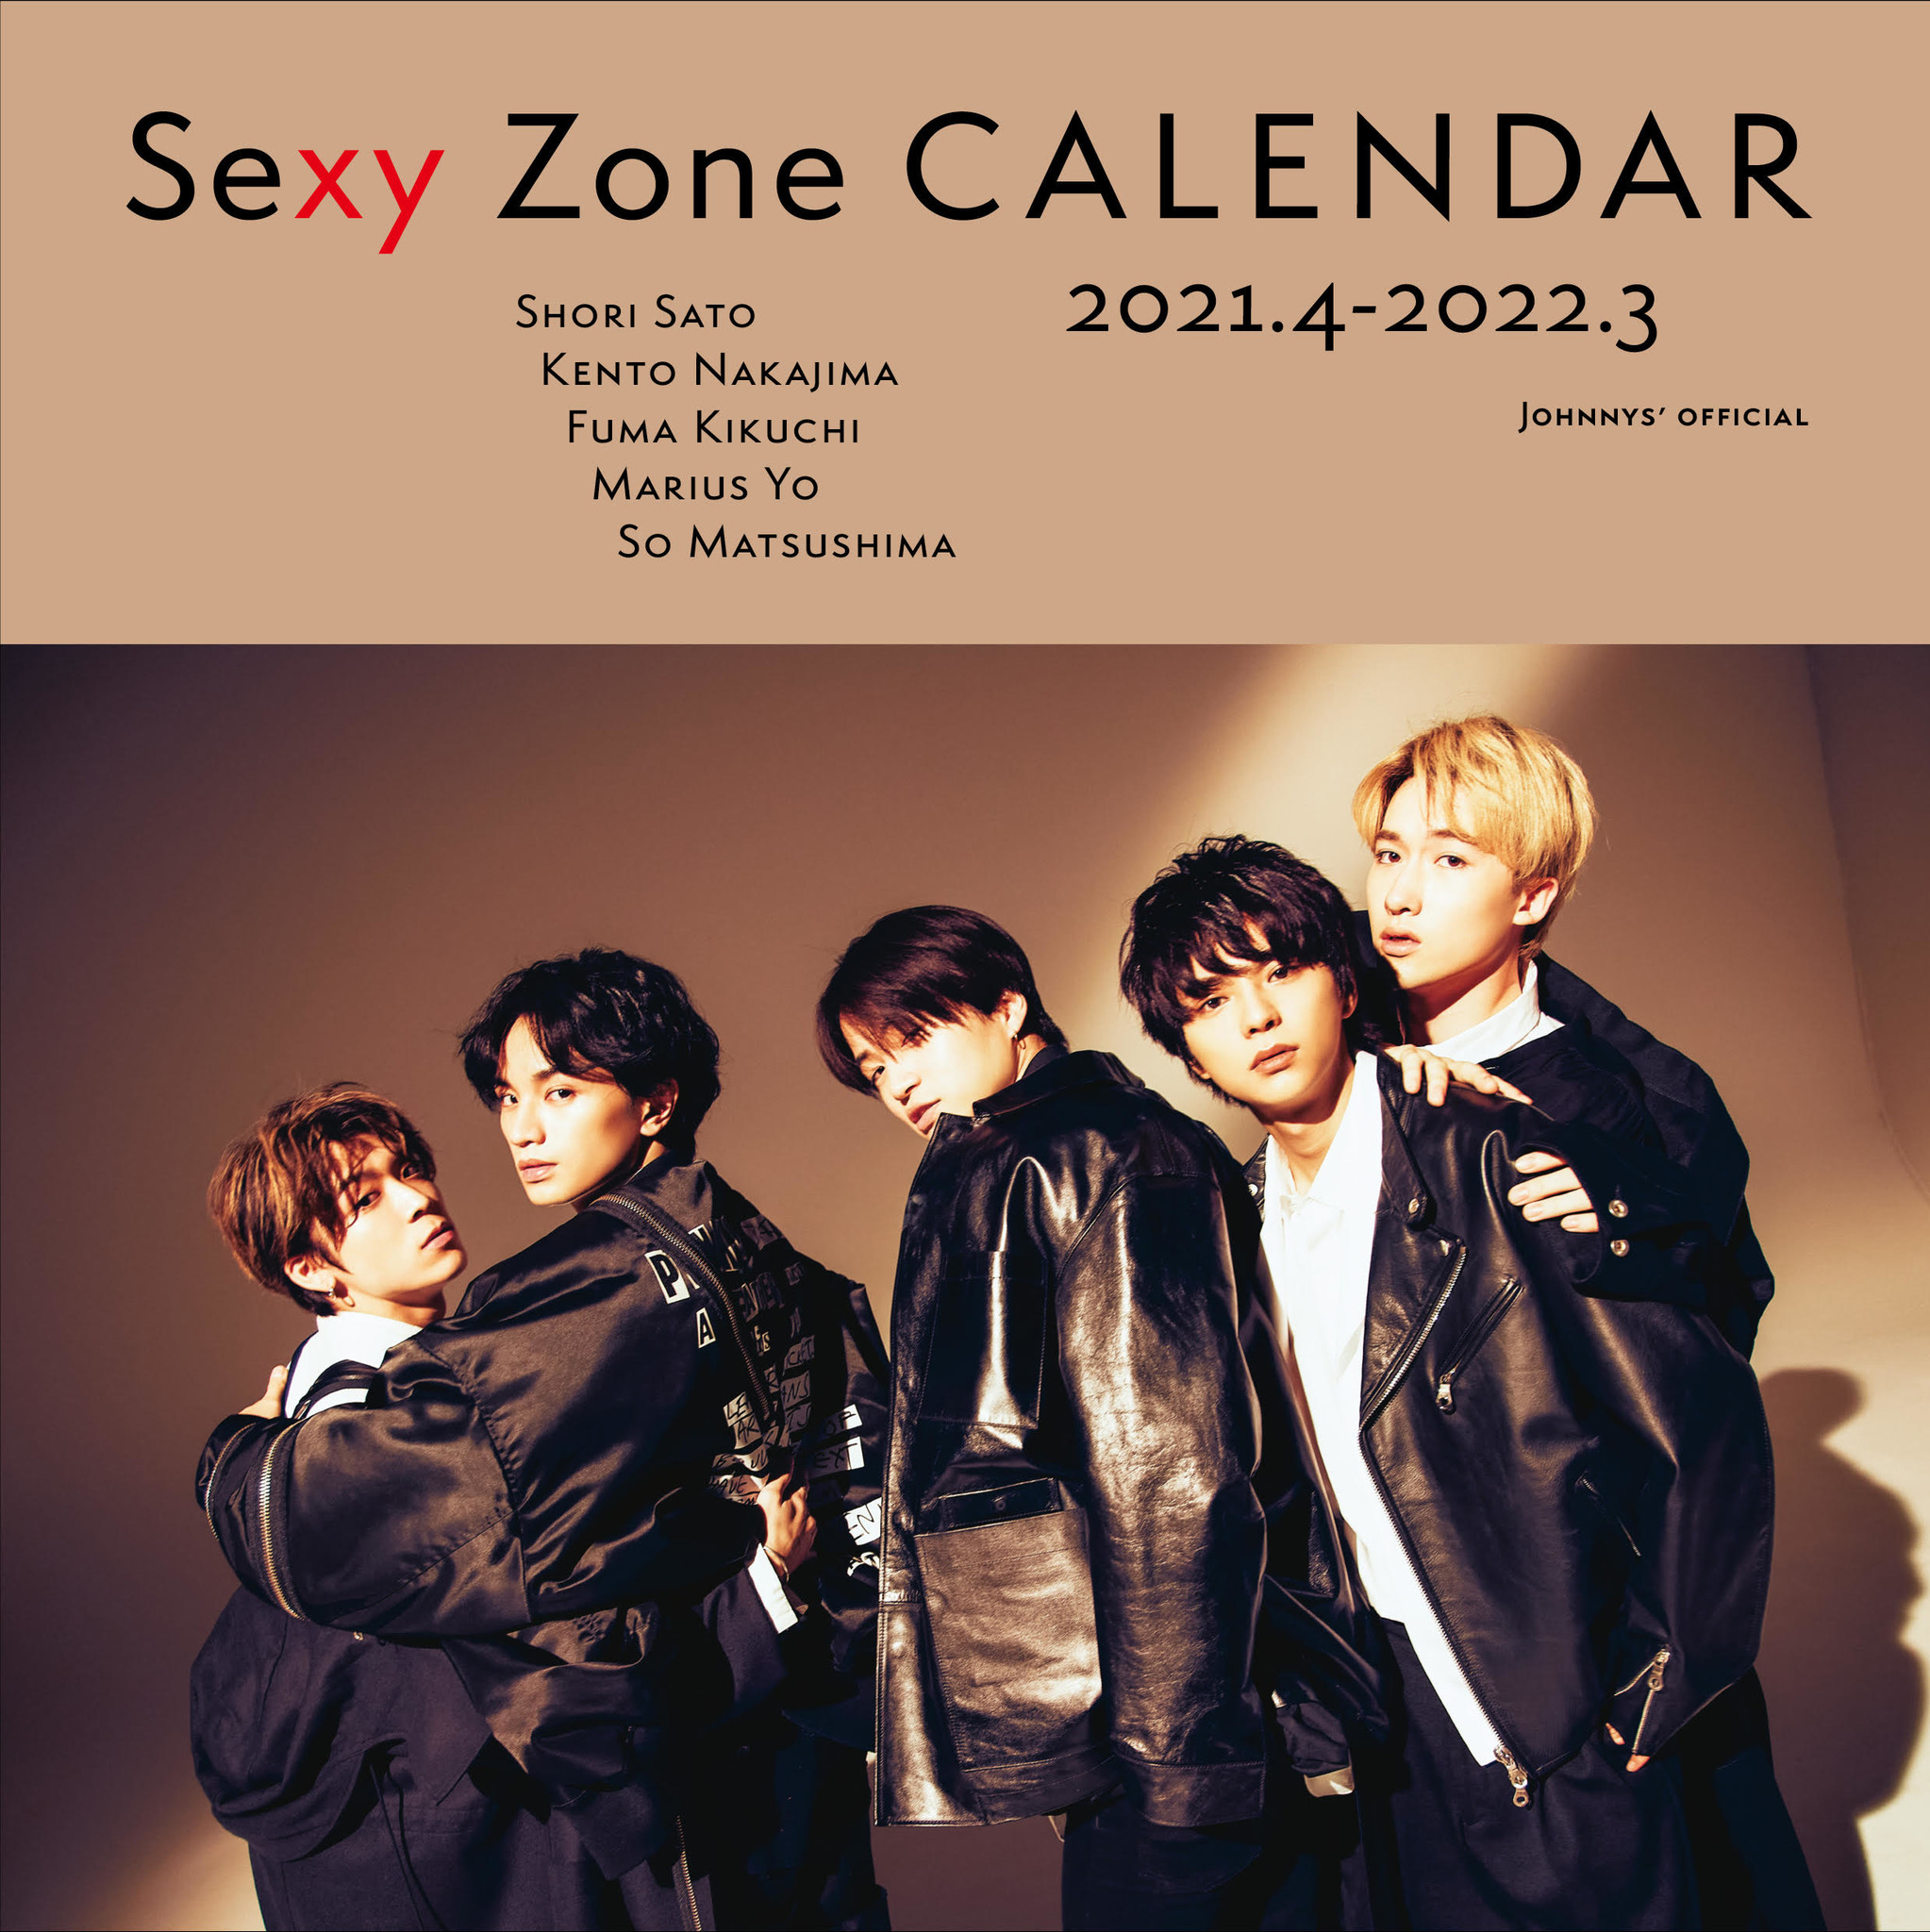 カバー解禁 Sexy Zone 21年度カレンダー が3月5日 金 発売 予約締切後も一部ネット書店で予約可能 株式会社光文社のプレスリリース